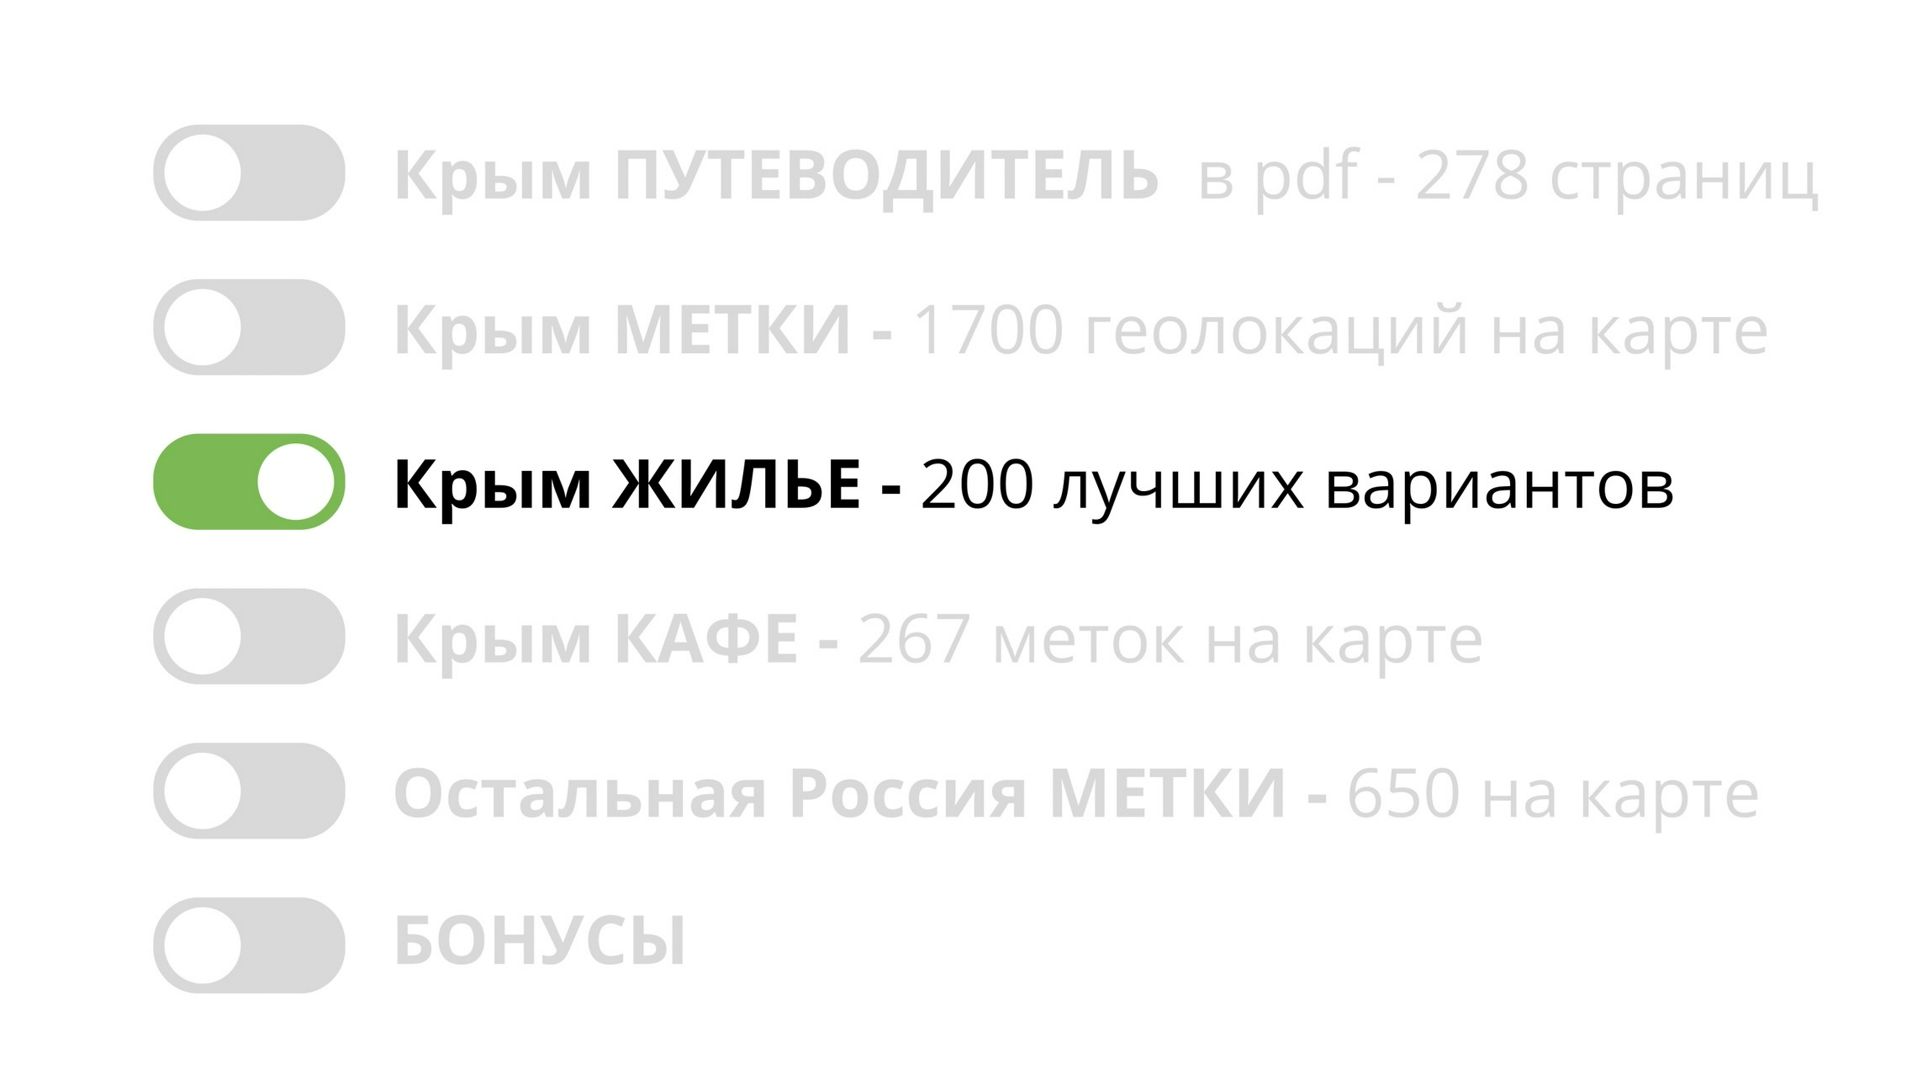 3️⃣ Крым ЖИЛЬЕ - 200 проверенных вариантов